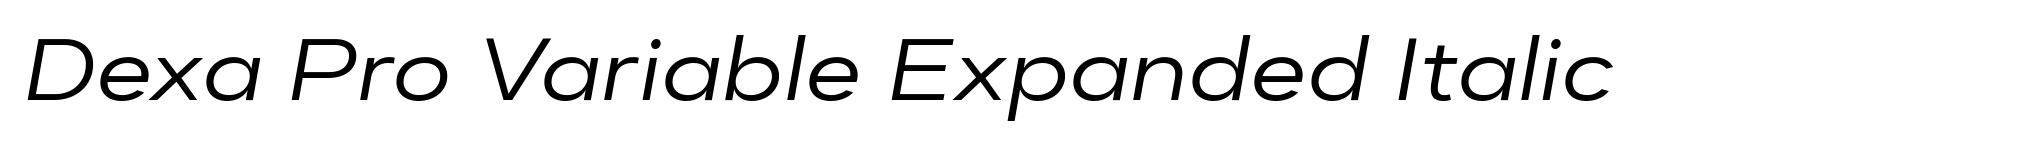 Dexa Pro Variable Expanded Italic image